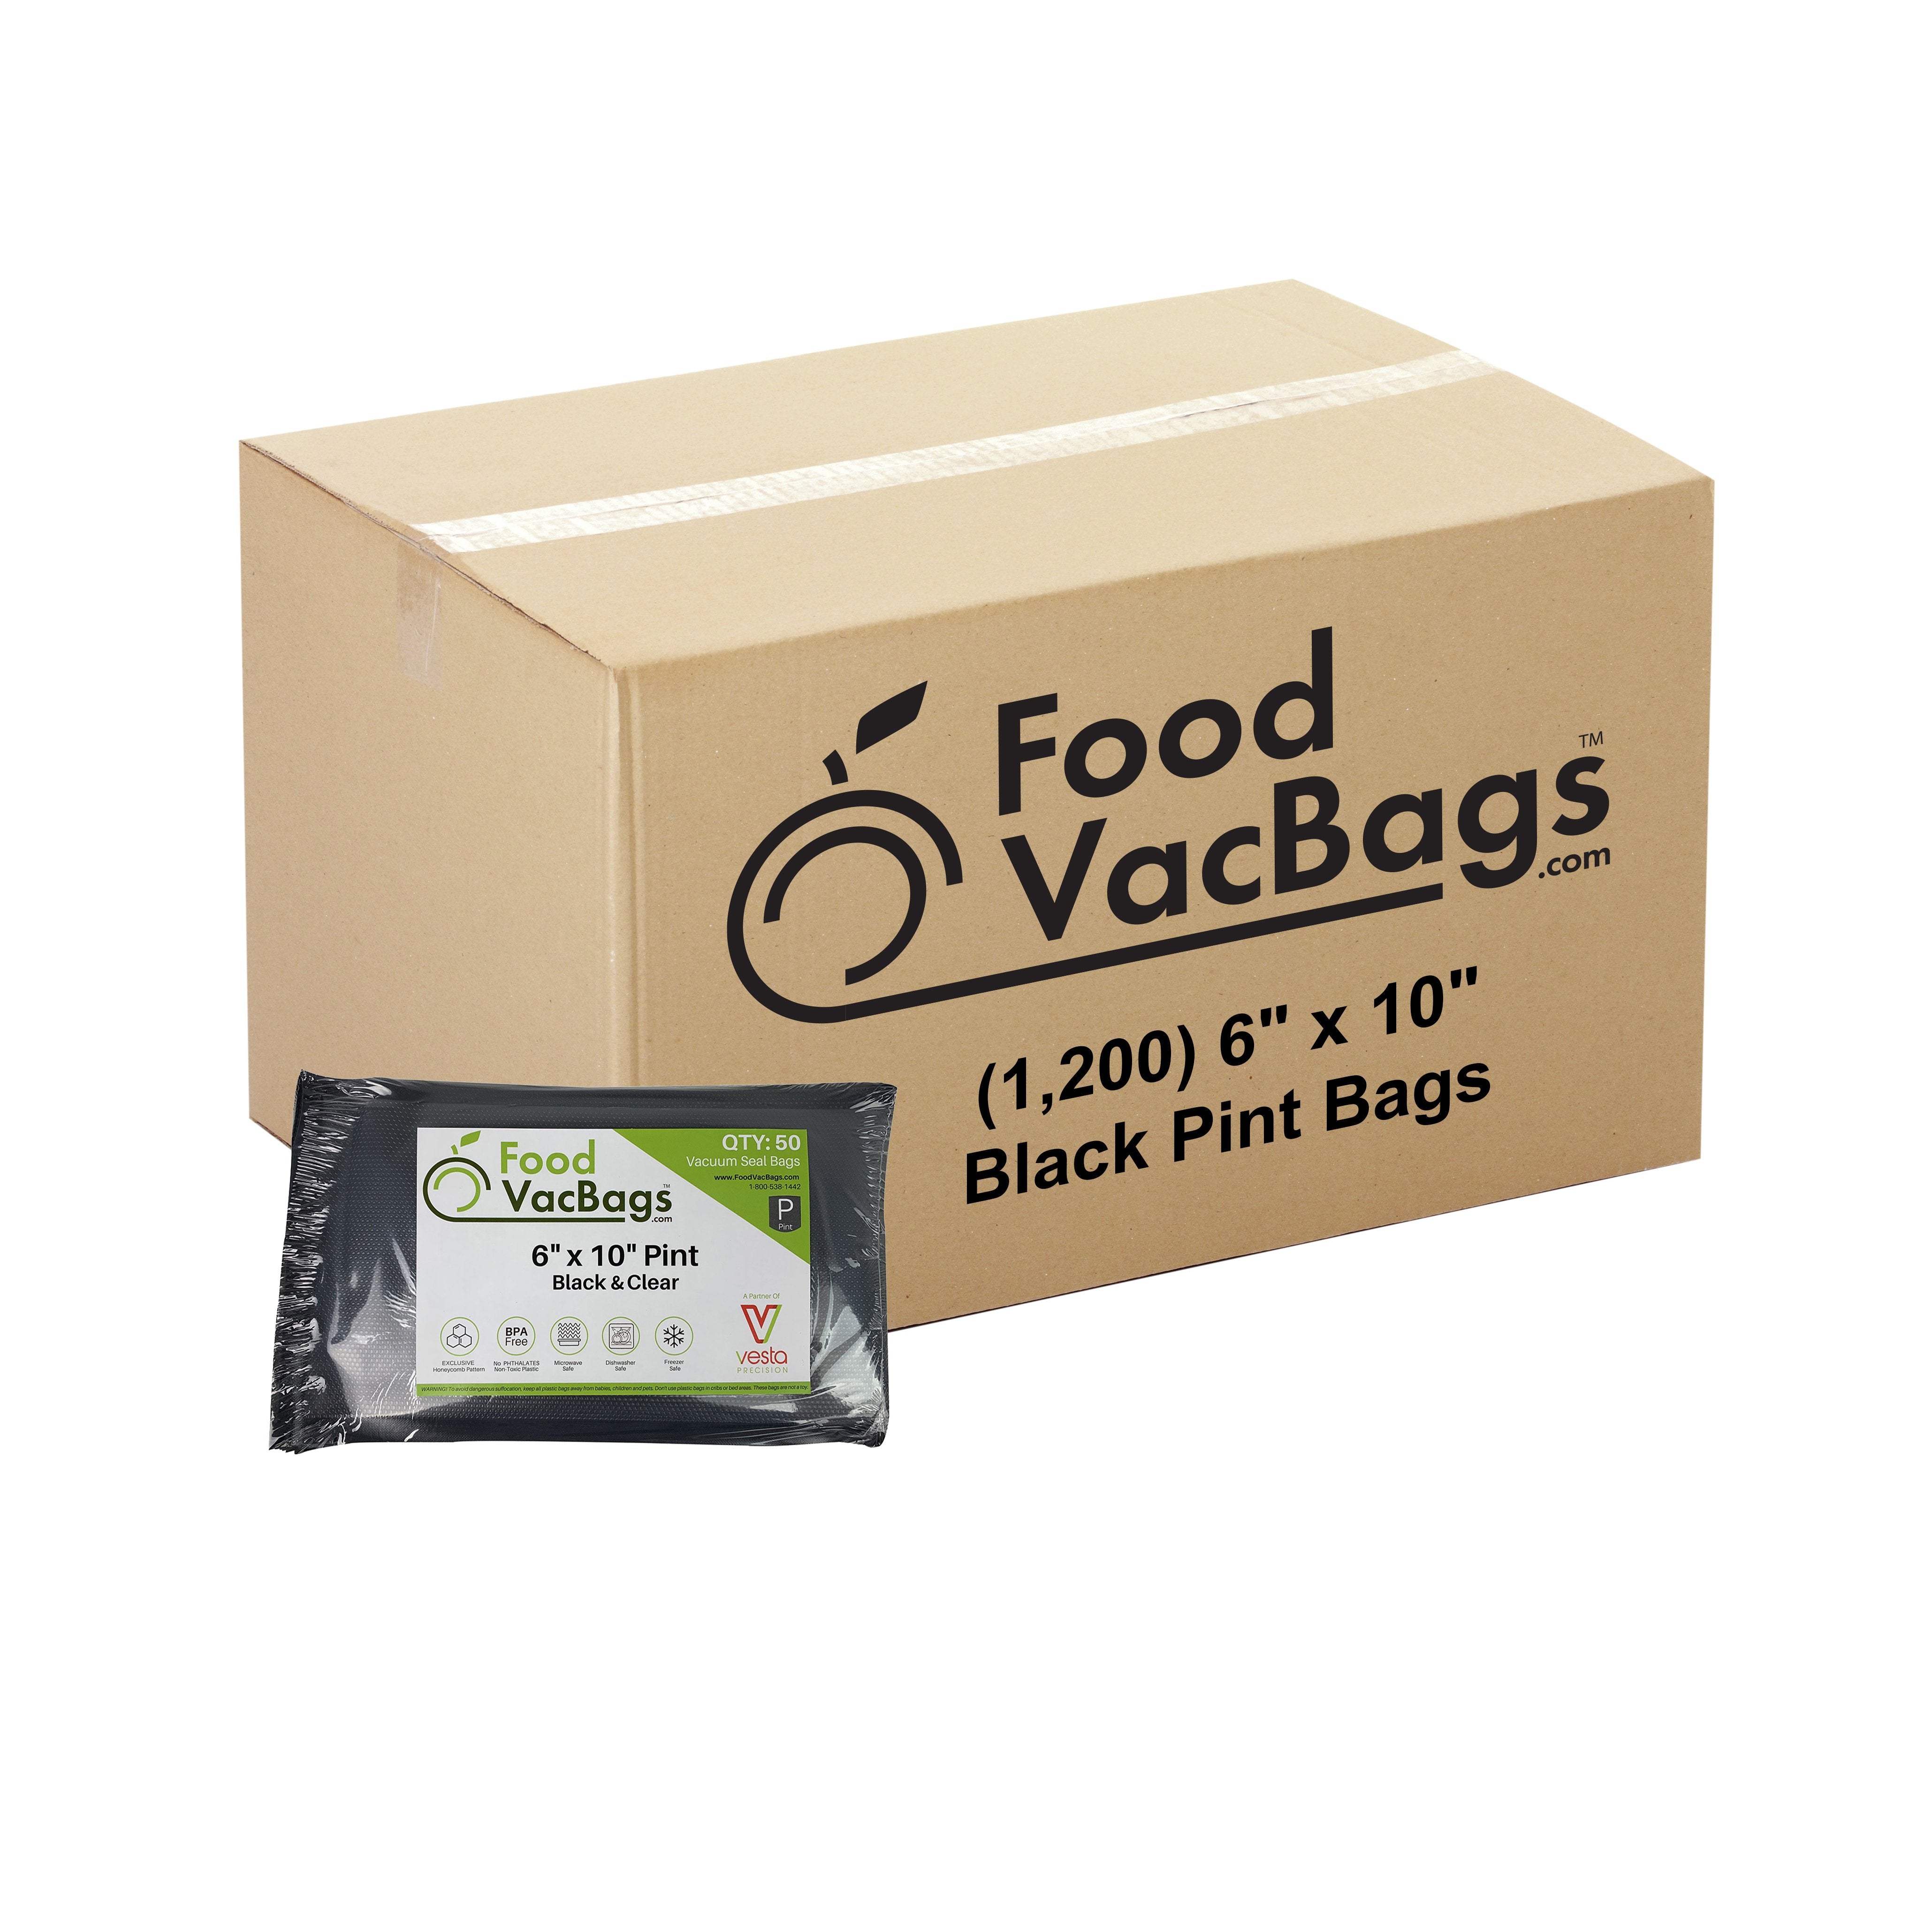 https://foodvacbags.com/cdn/shop/products/6x10-Black-1200_ce35a604-d93d-4e5f-8ef5-ec64f0a77202.jpg?v=1583270510